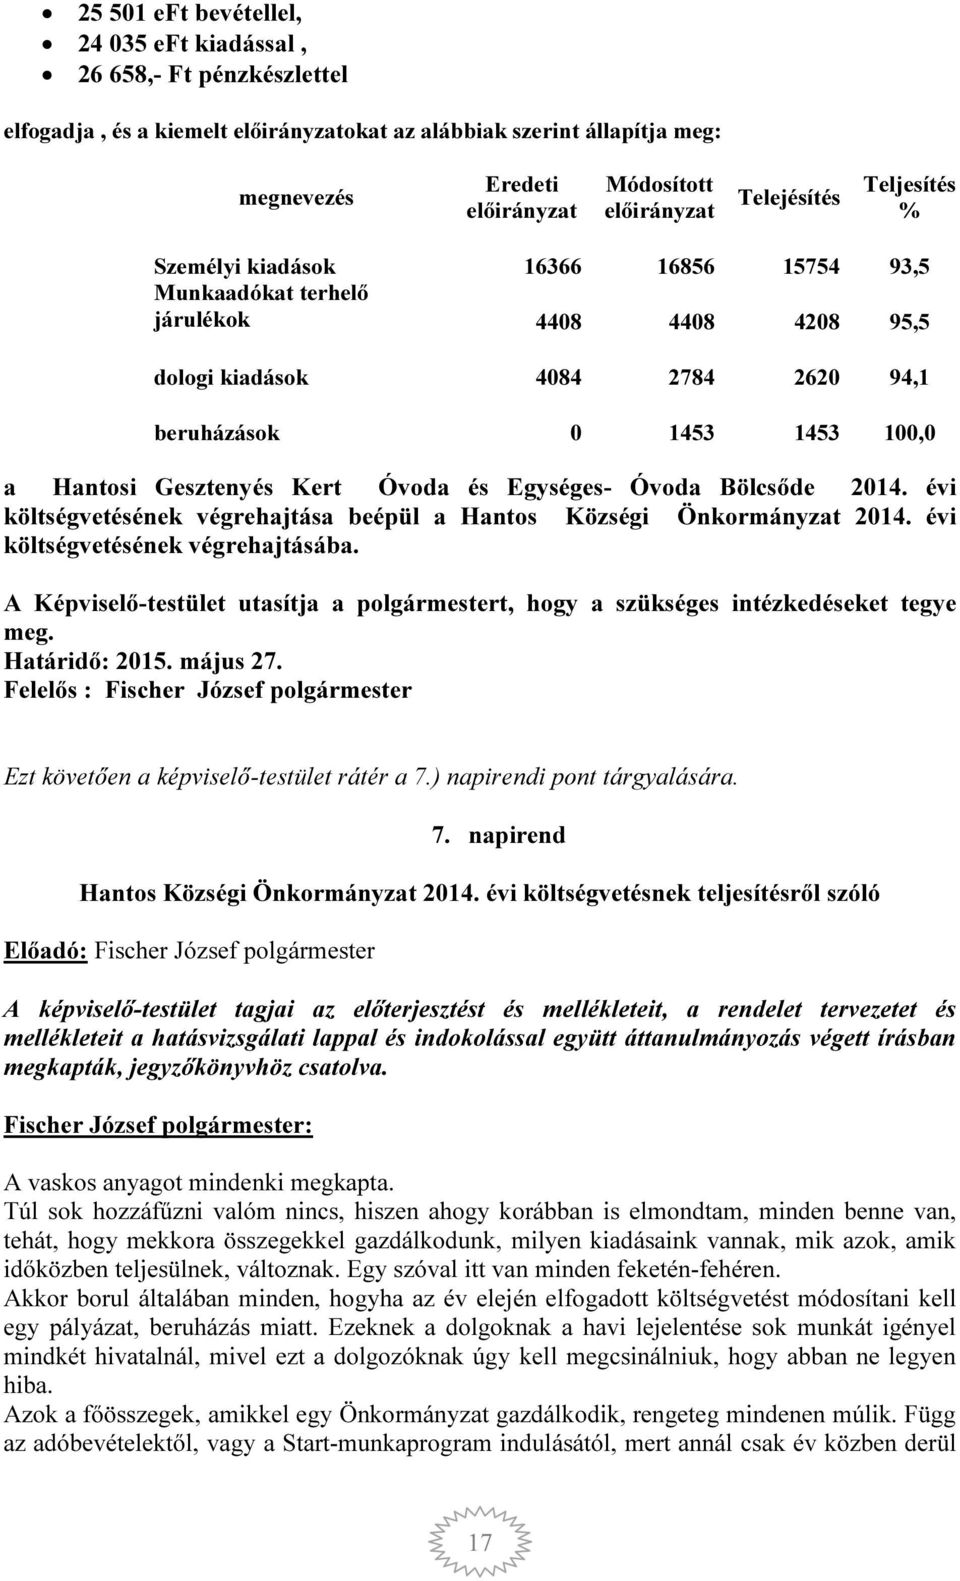 Hantosi Gesztenyés Kert Óvoda és Egységes- Óvoda Bölcsőde 2014. évi költségvetésének végrehajtása beépül a Hantos Községi Önkormányzat 2014. évi költségvetésének végrehajtásába.